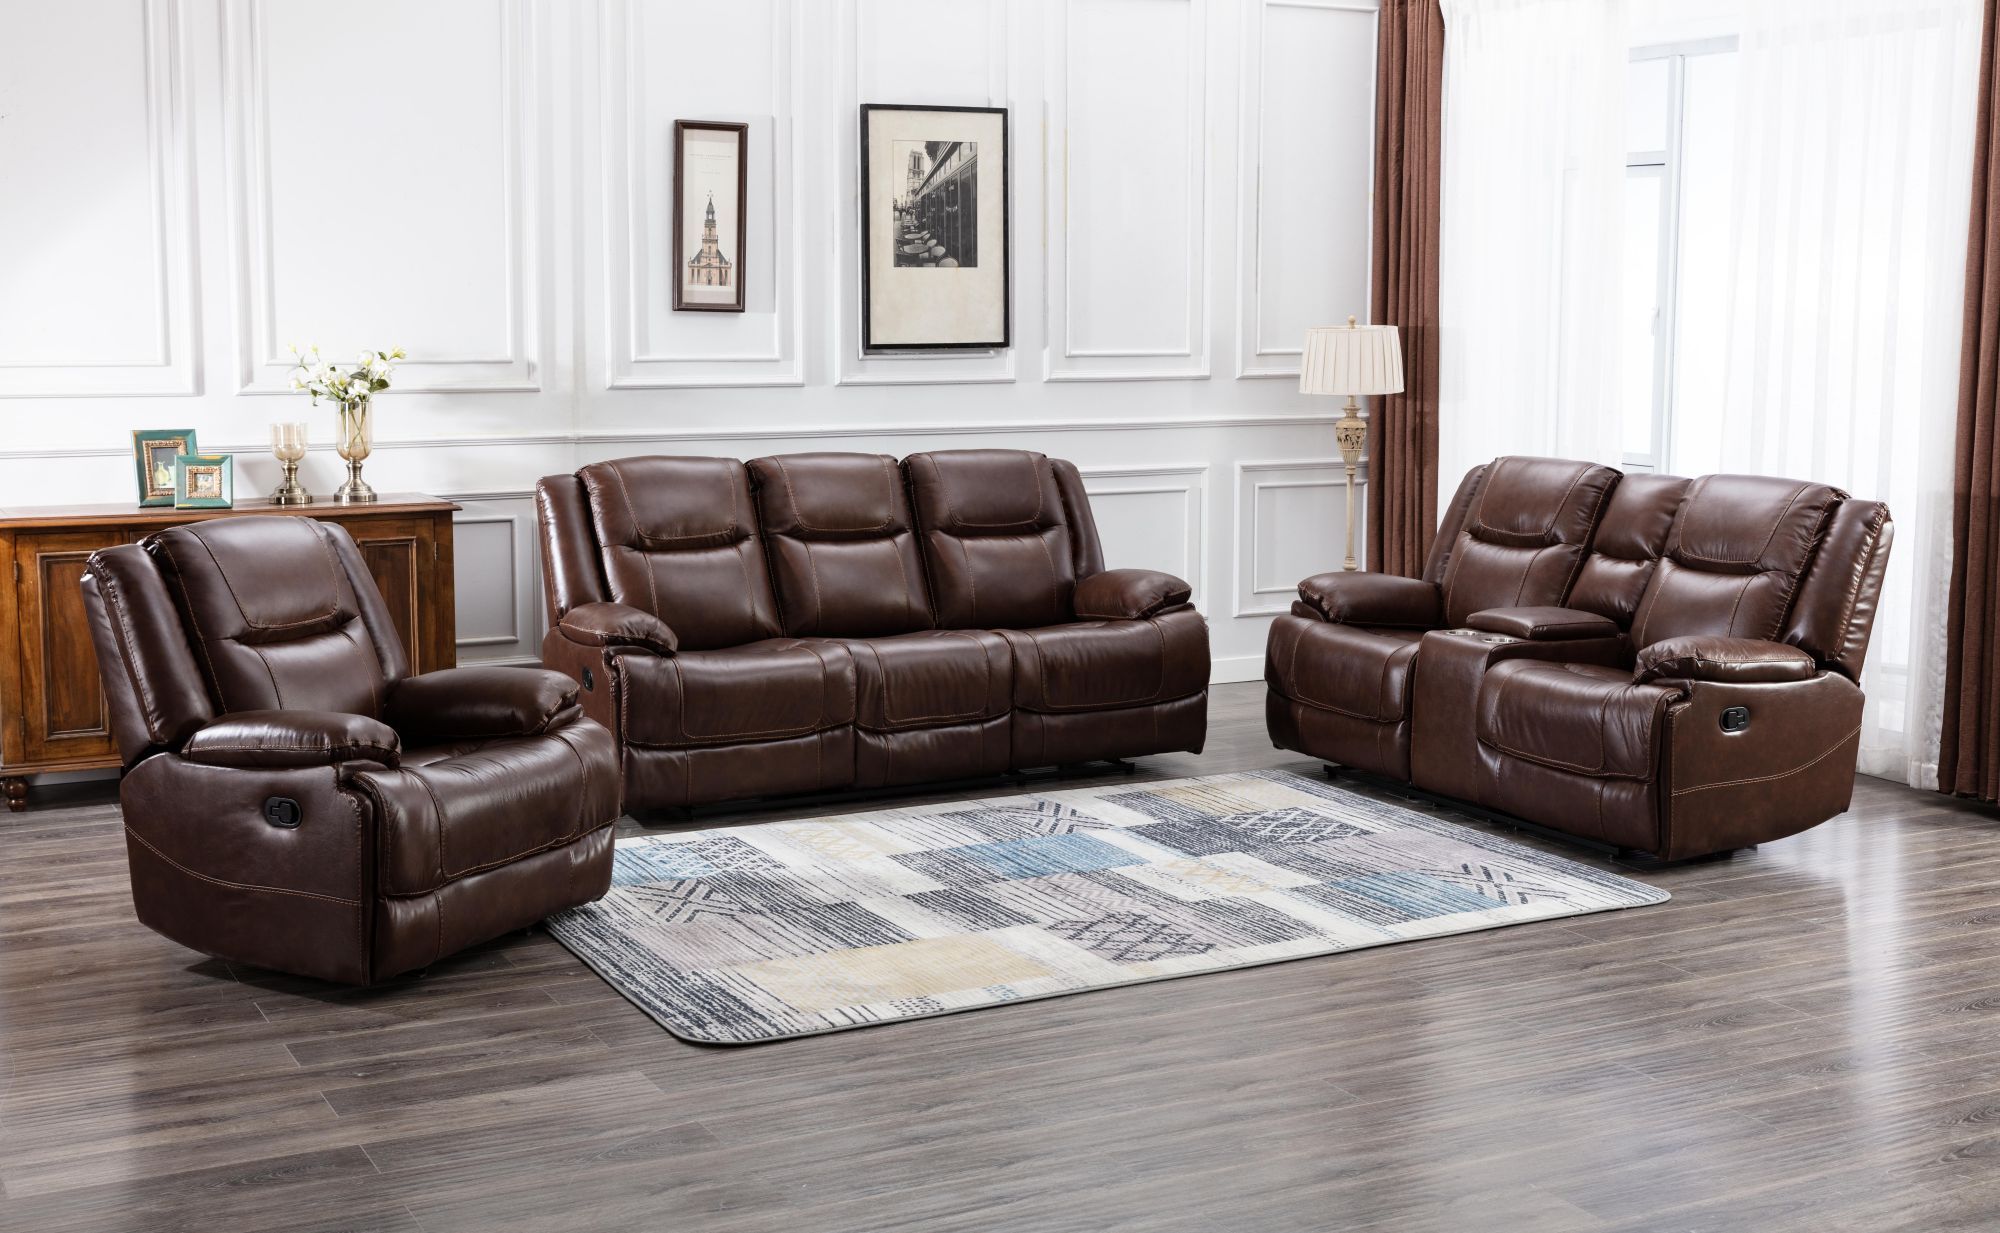 Combo Genuine Leather Sofa Living Room Sofa High Quality Sofa Set Sofa-CASAINC